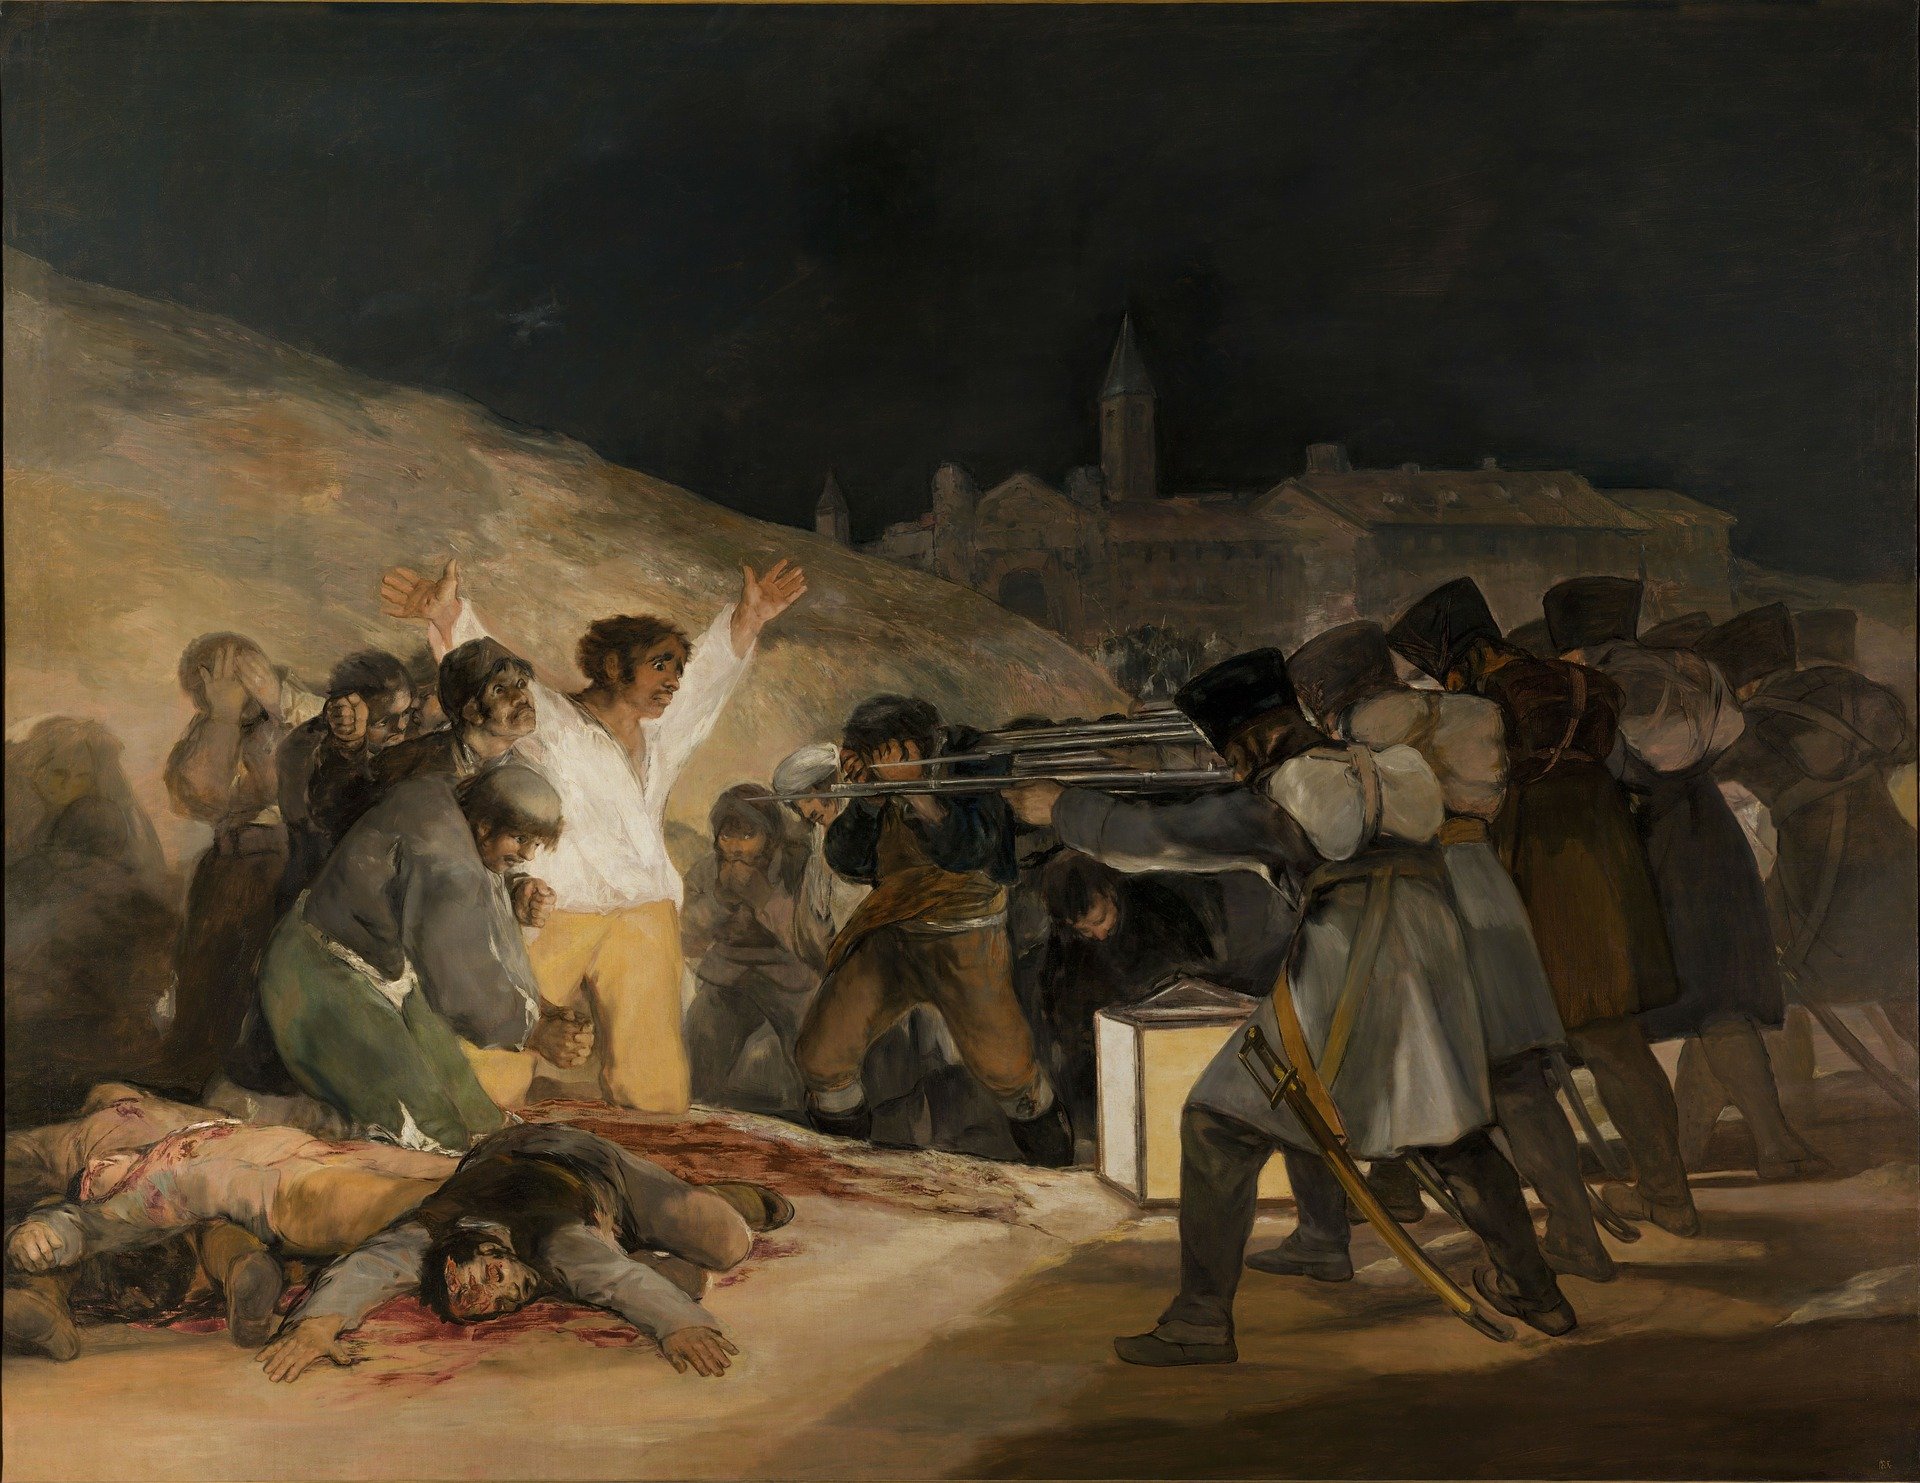 słynne obrazy quiz wiedzy test malarstwo malarze historia sztuki francisco goya trzeci maja 1808